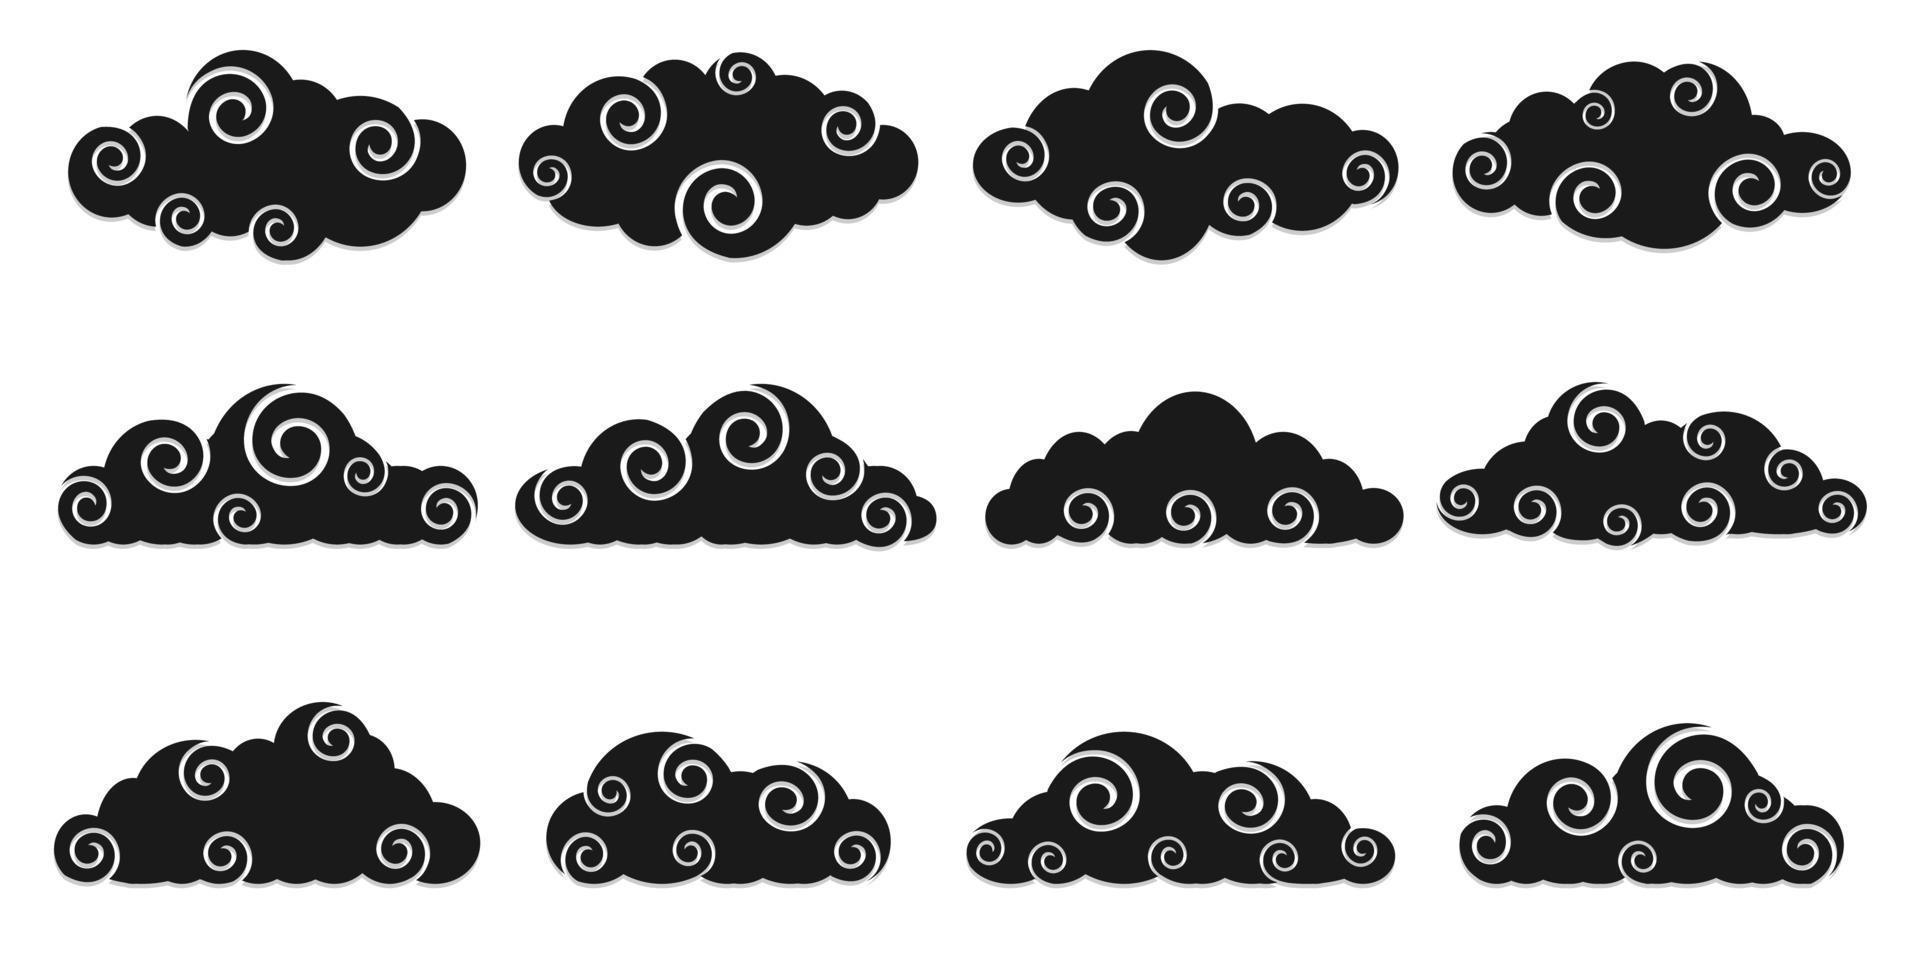 nuvens chinesas pretas, formas diferentes, conjunto de ícones de nuvem, estilo de corte vetor